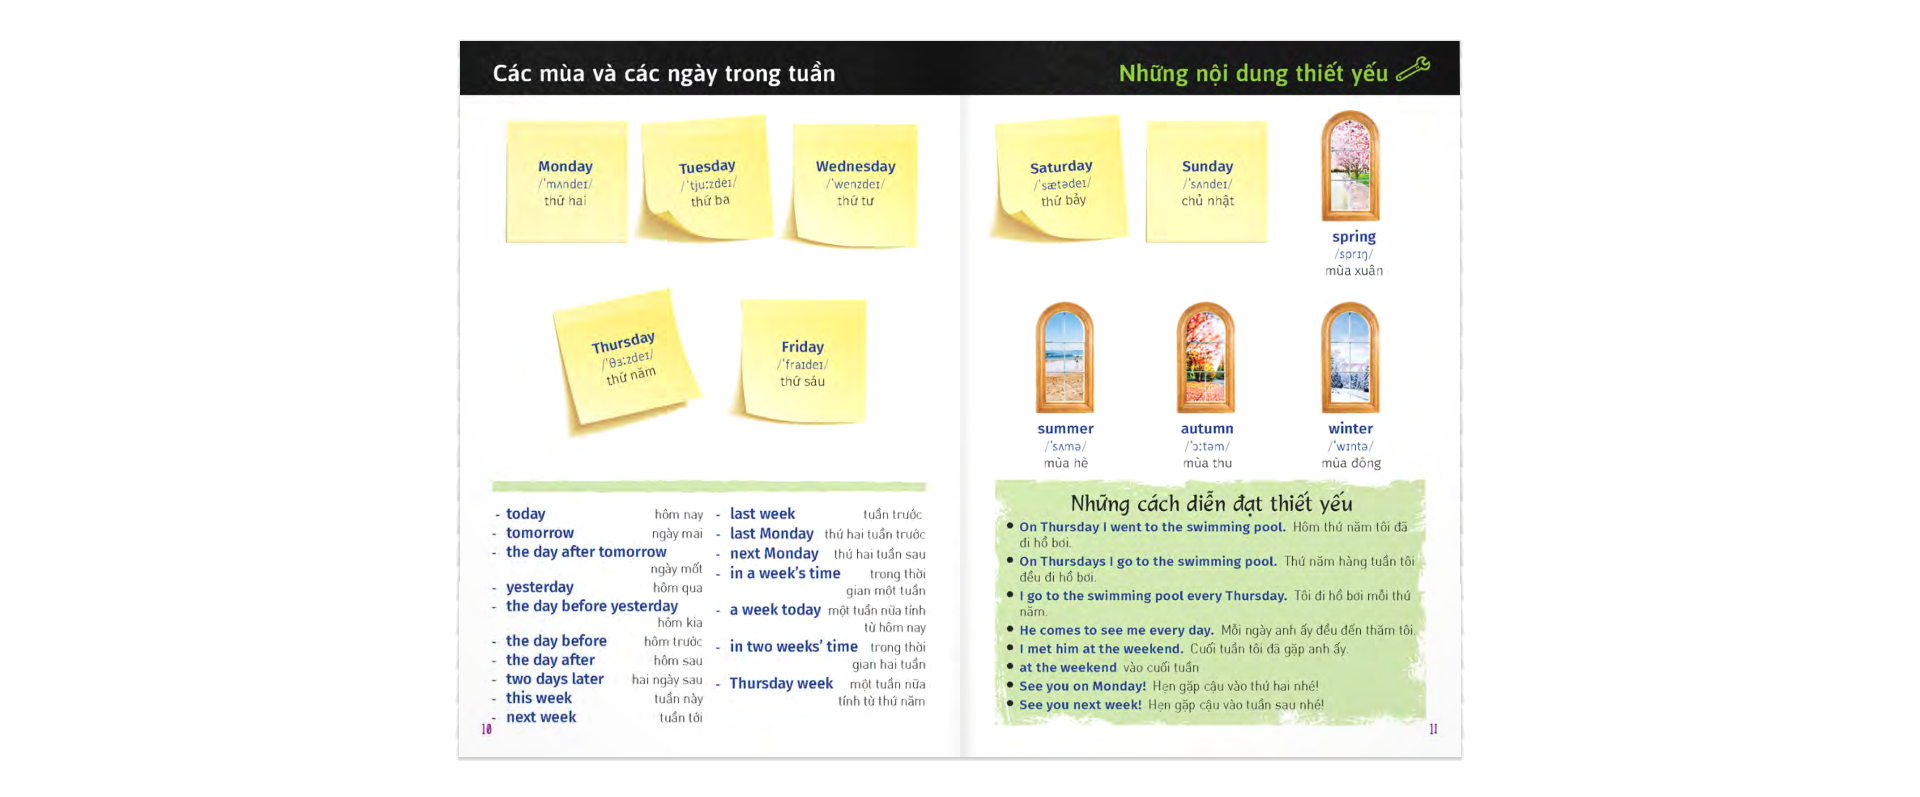 Từ Điển Trực Quan Bỏ Túi Anh-Việt PDF